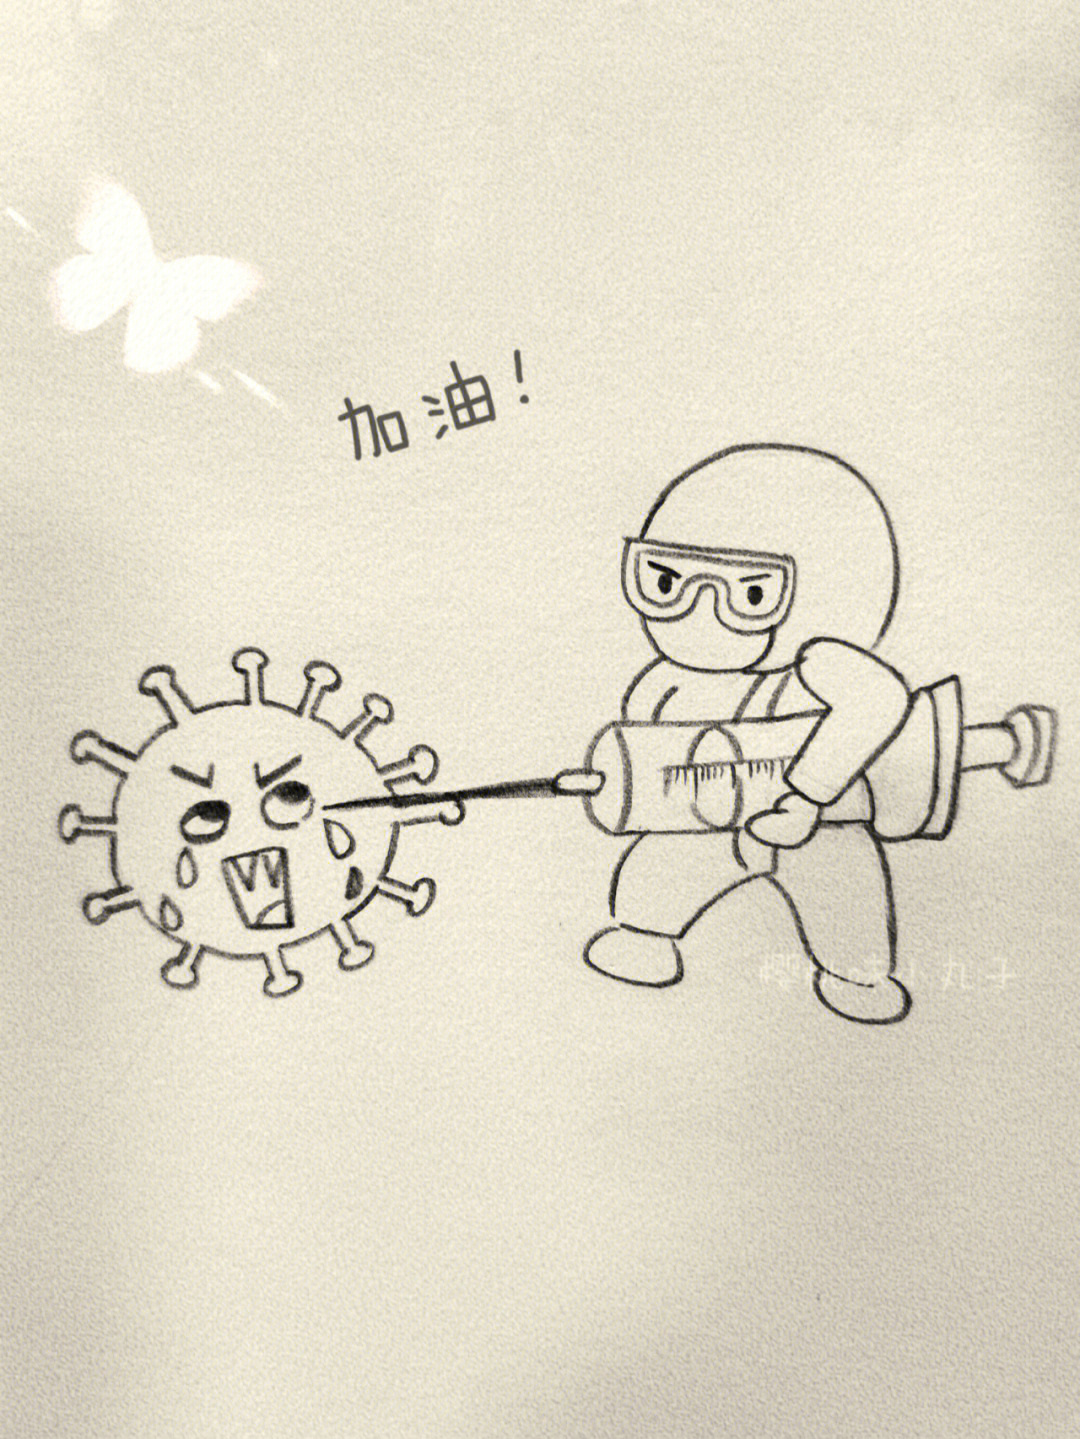 抗病毒的简笔画简单图片